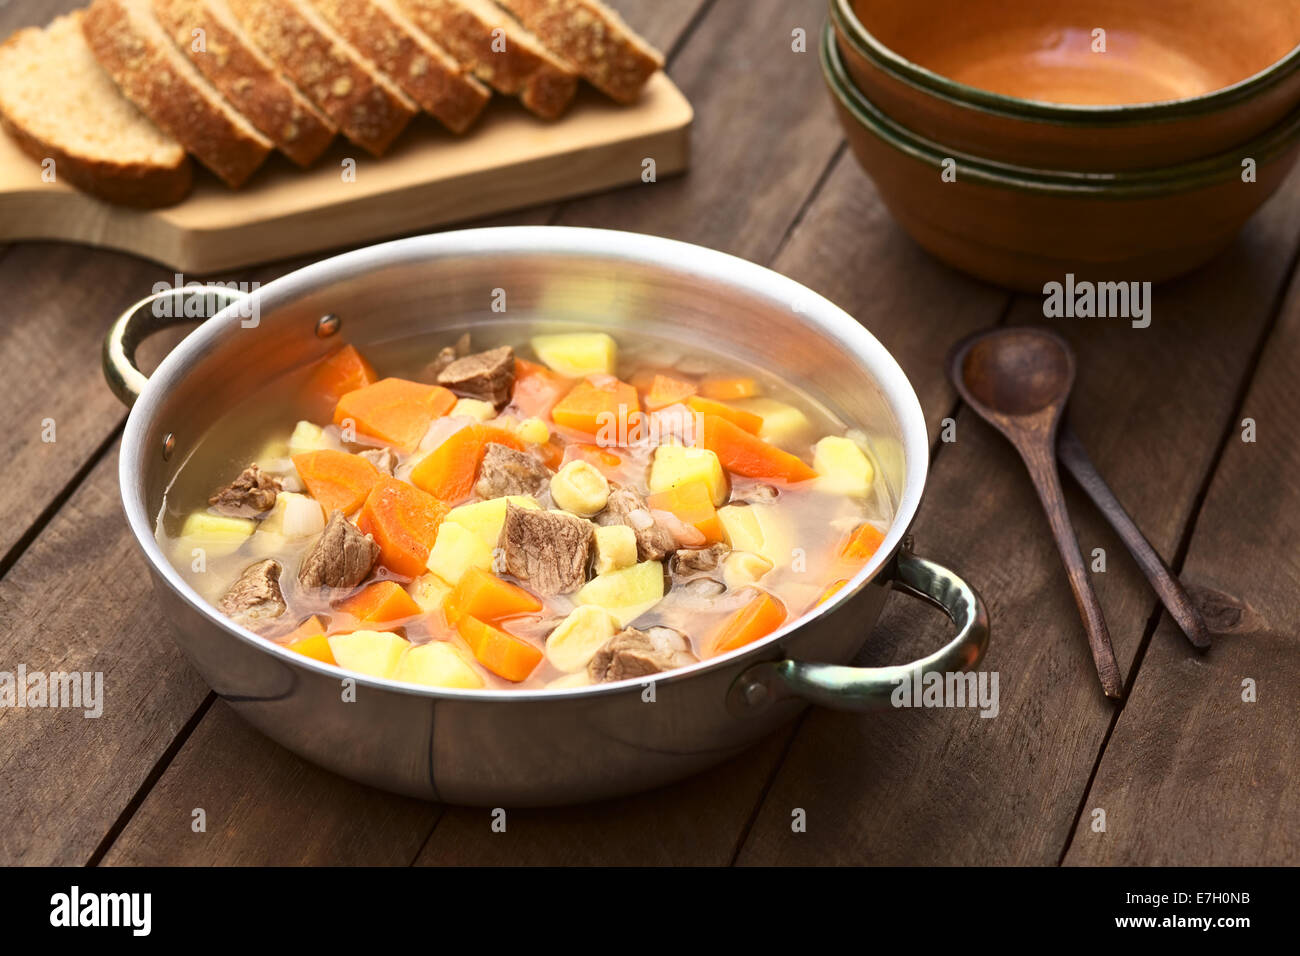 Tradizionale zuppa ungherese chiamato Gulyasleves fatta di carni bovine, patata, carota, cipolla, csipetke (pasta fatta in casa) e paprica Foto Stock